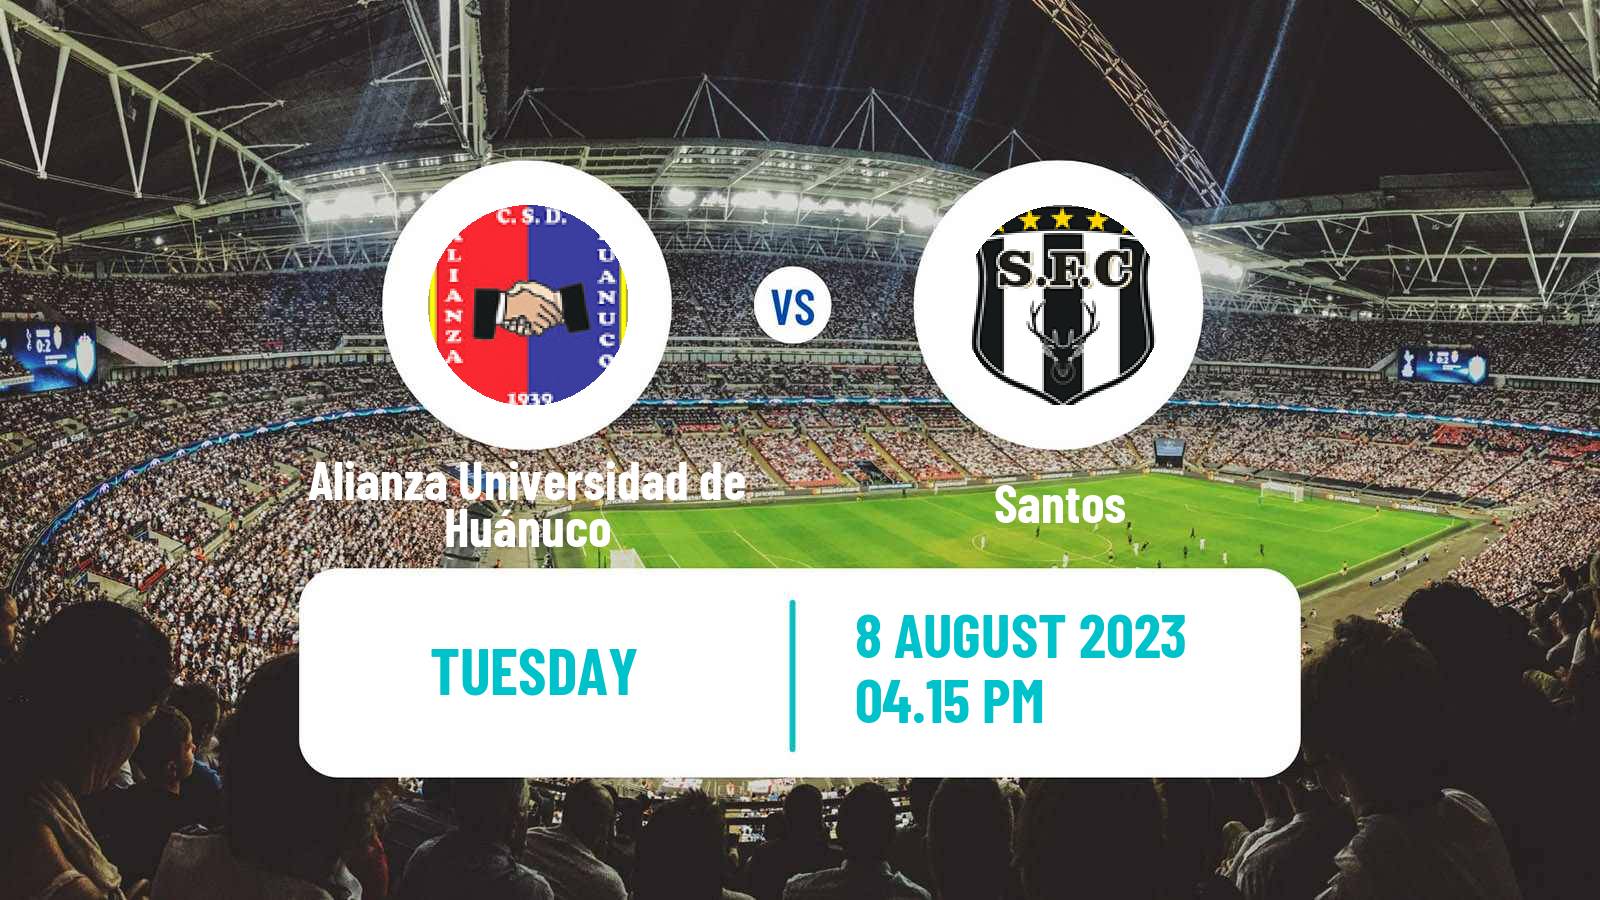 Soccer Peruvian Liga 2 Alianza Universidad de Huánuco - Santos